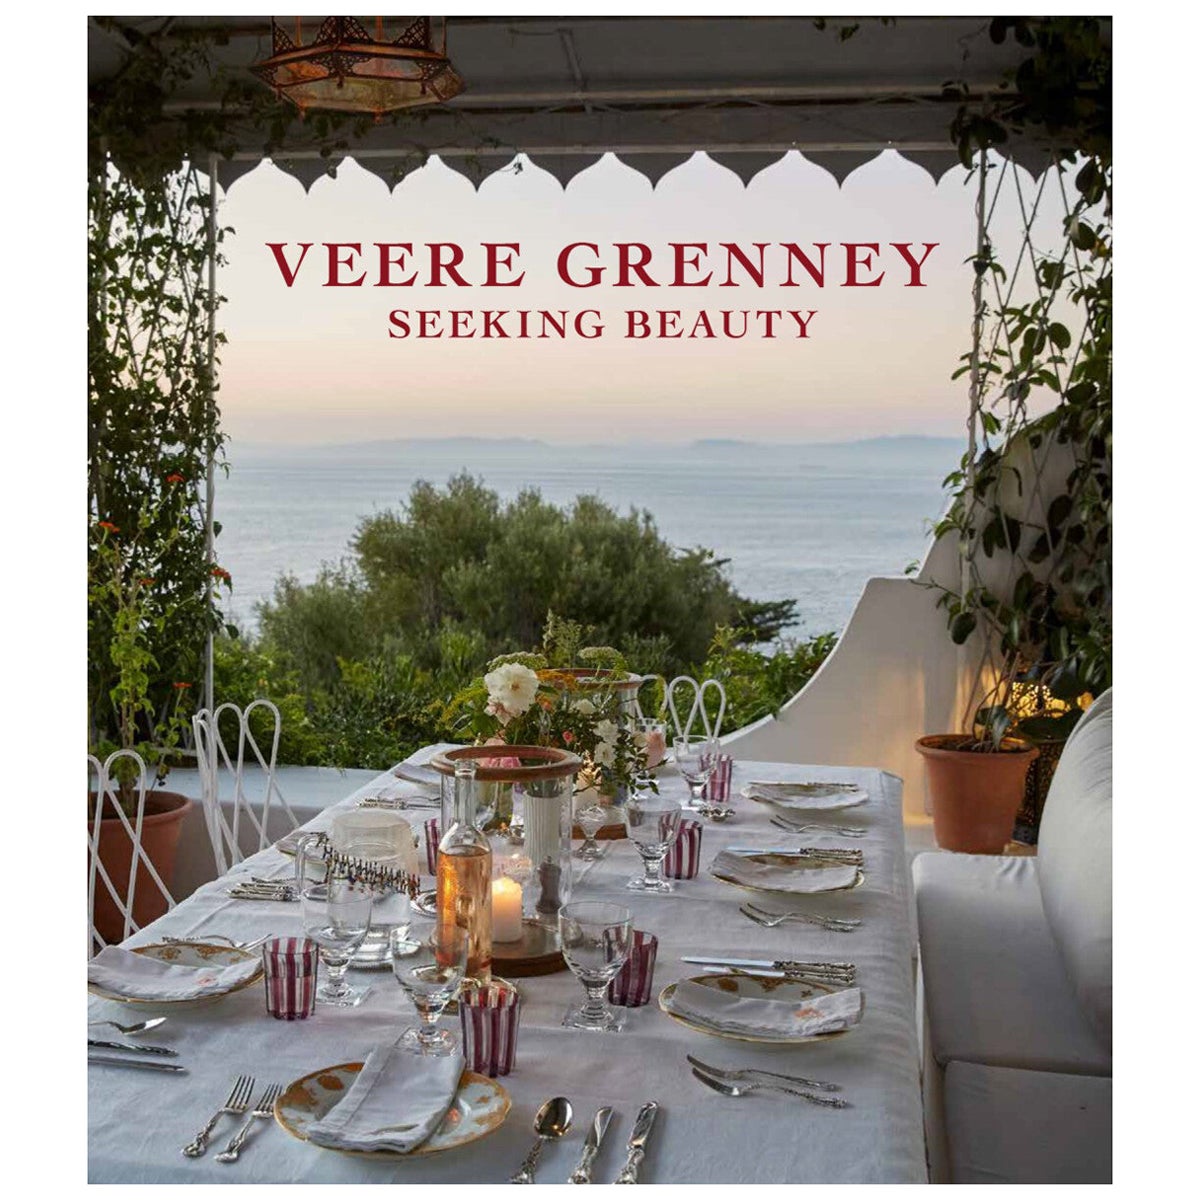 Veere Grenney Seeking Beauty Book by Veere Grenney For Sale